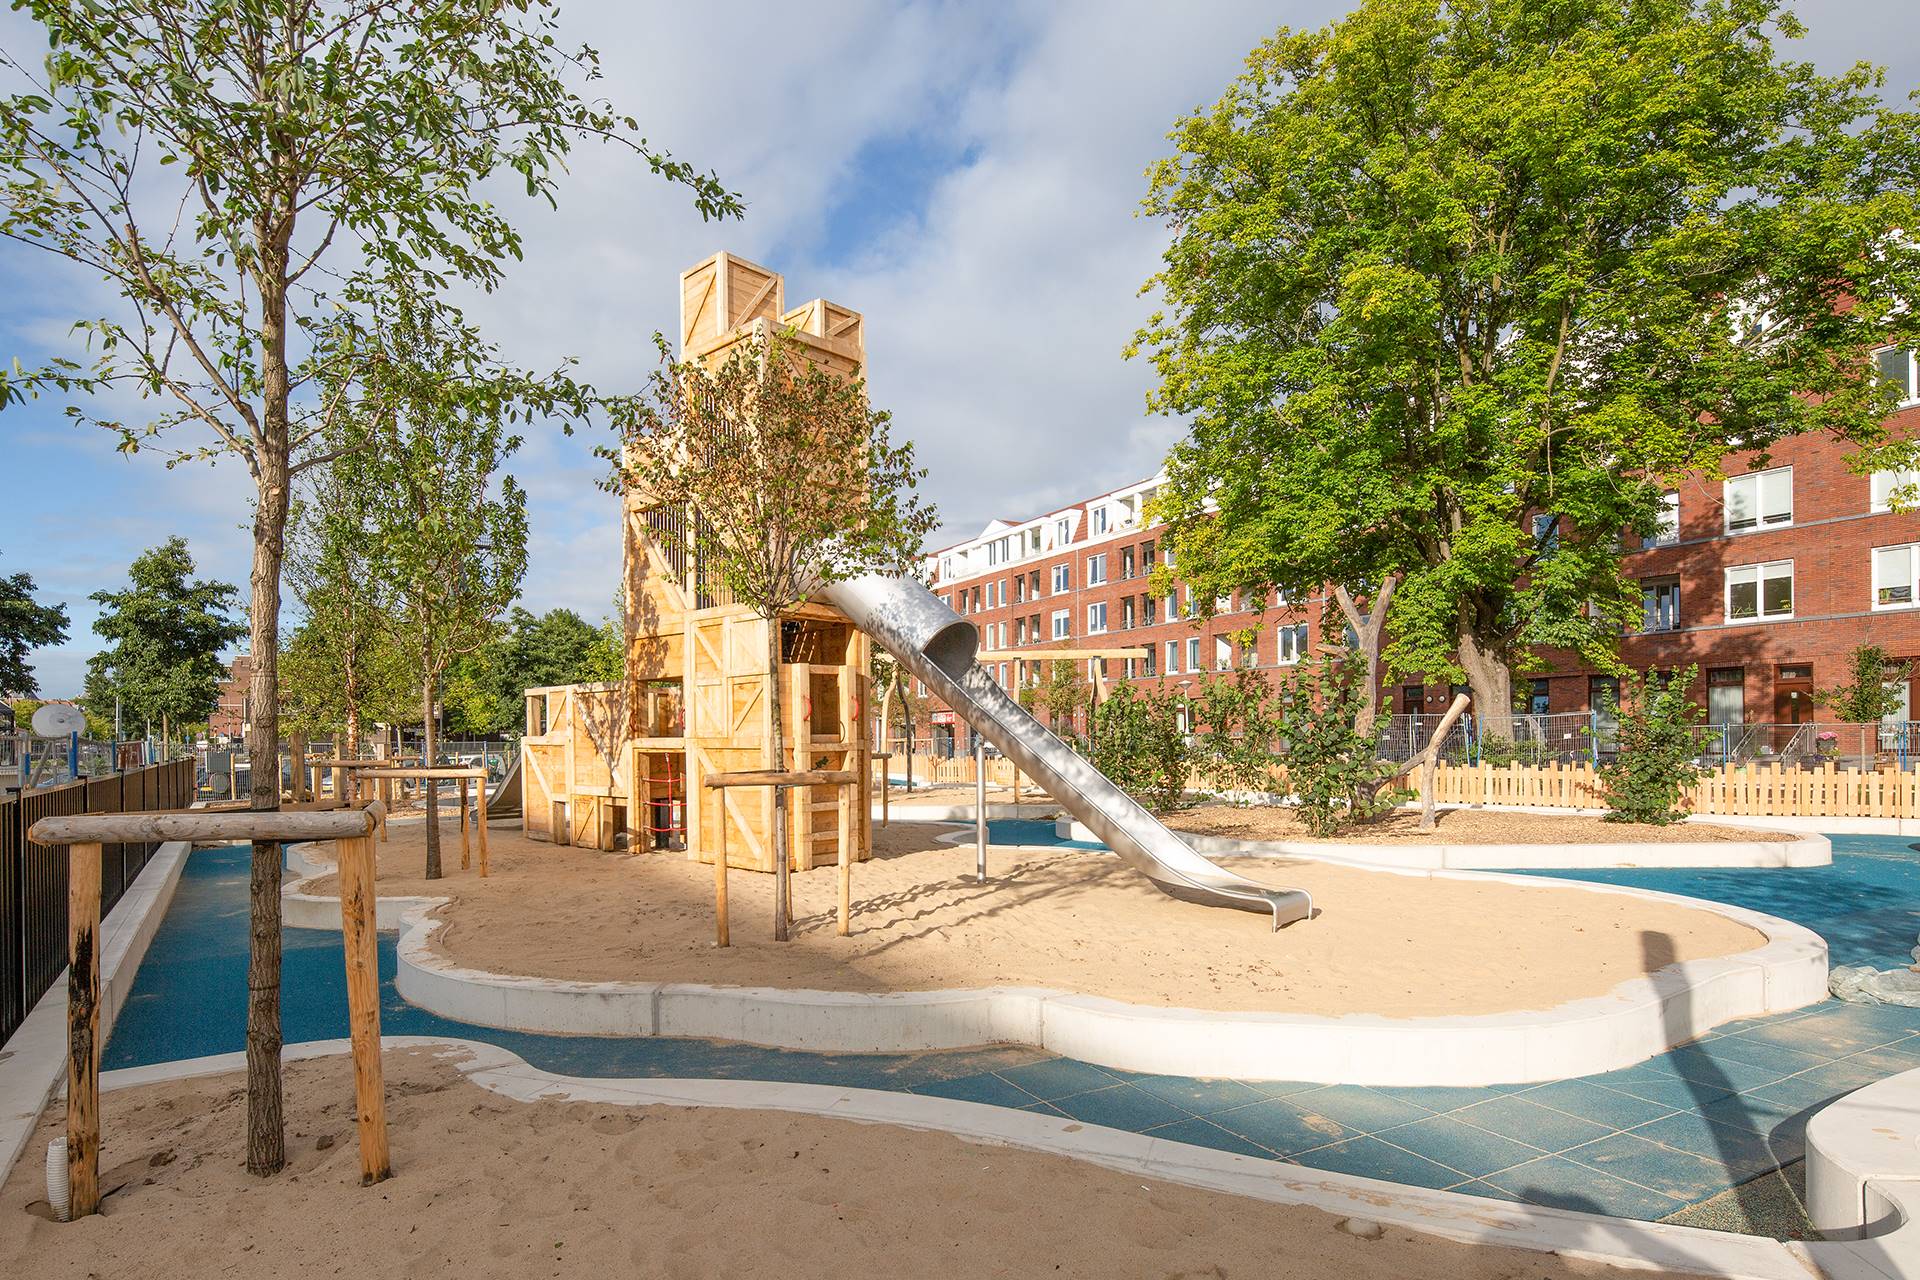 Funenpark, Amsterdam-Centrum - Het resultaat van deze speeltuin kwam voort uit een intensieve samenwerking en de inbreng van bewoners en gebruikers